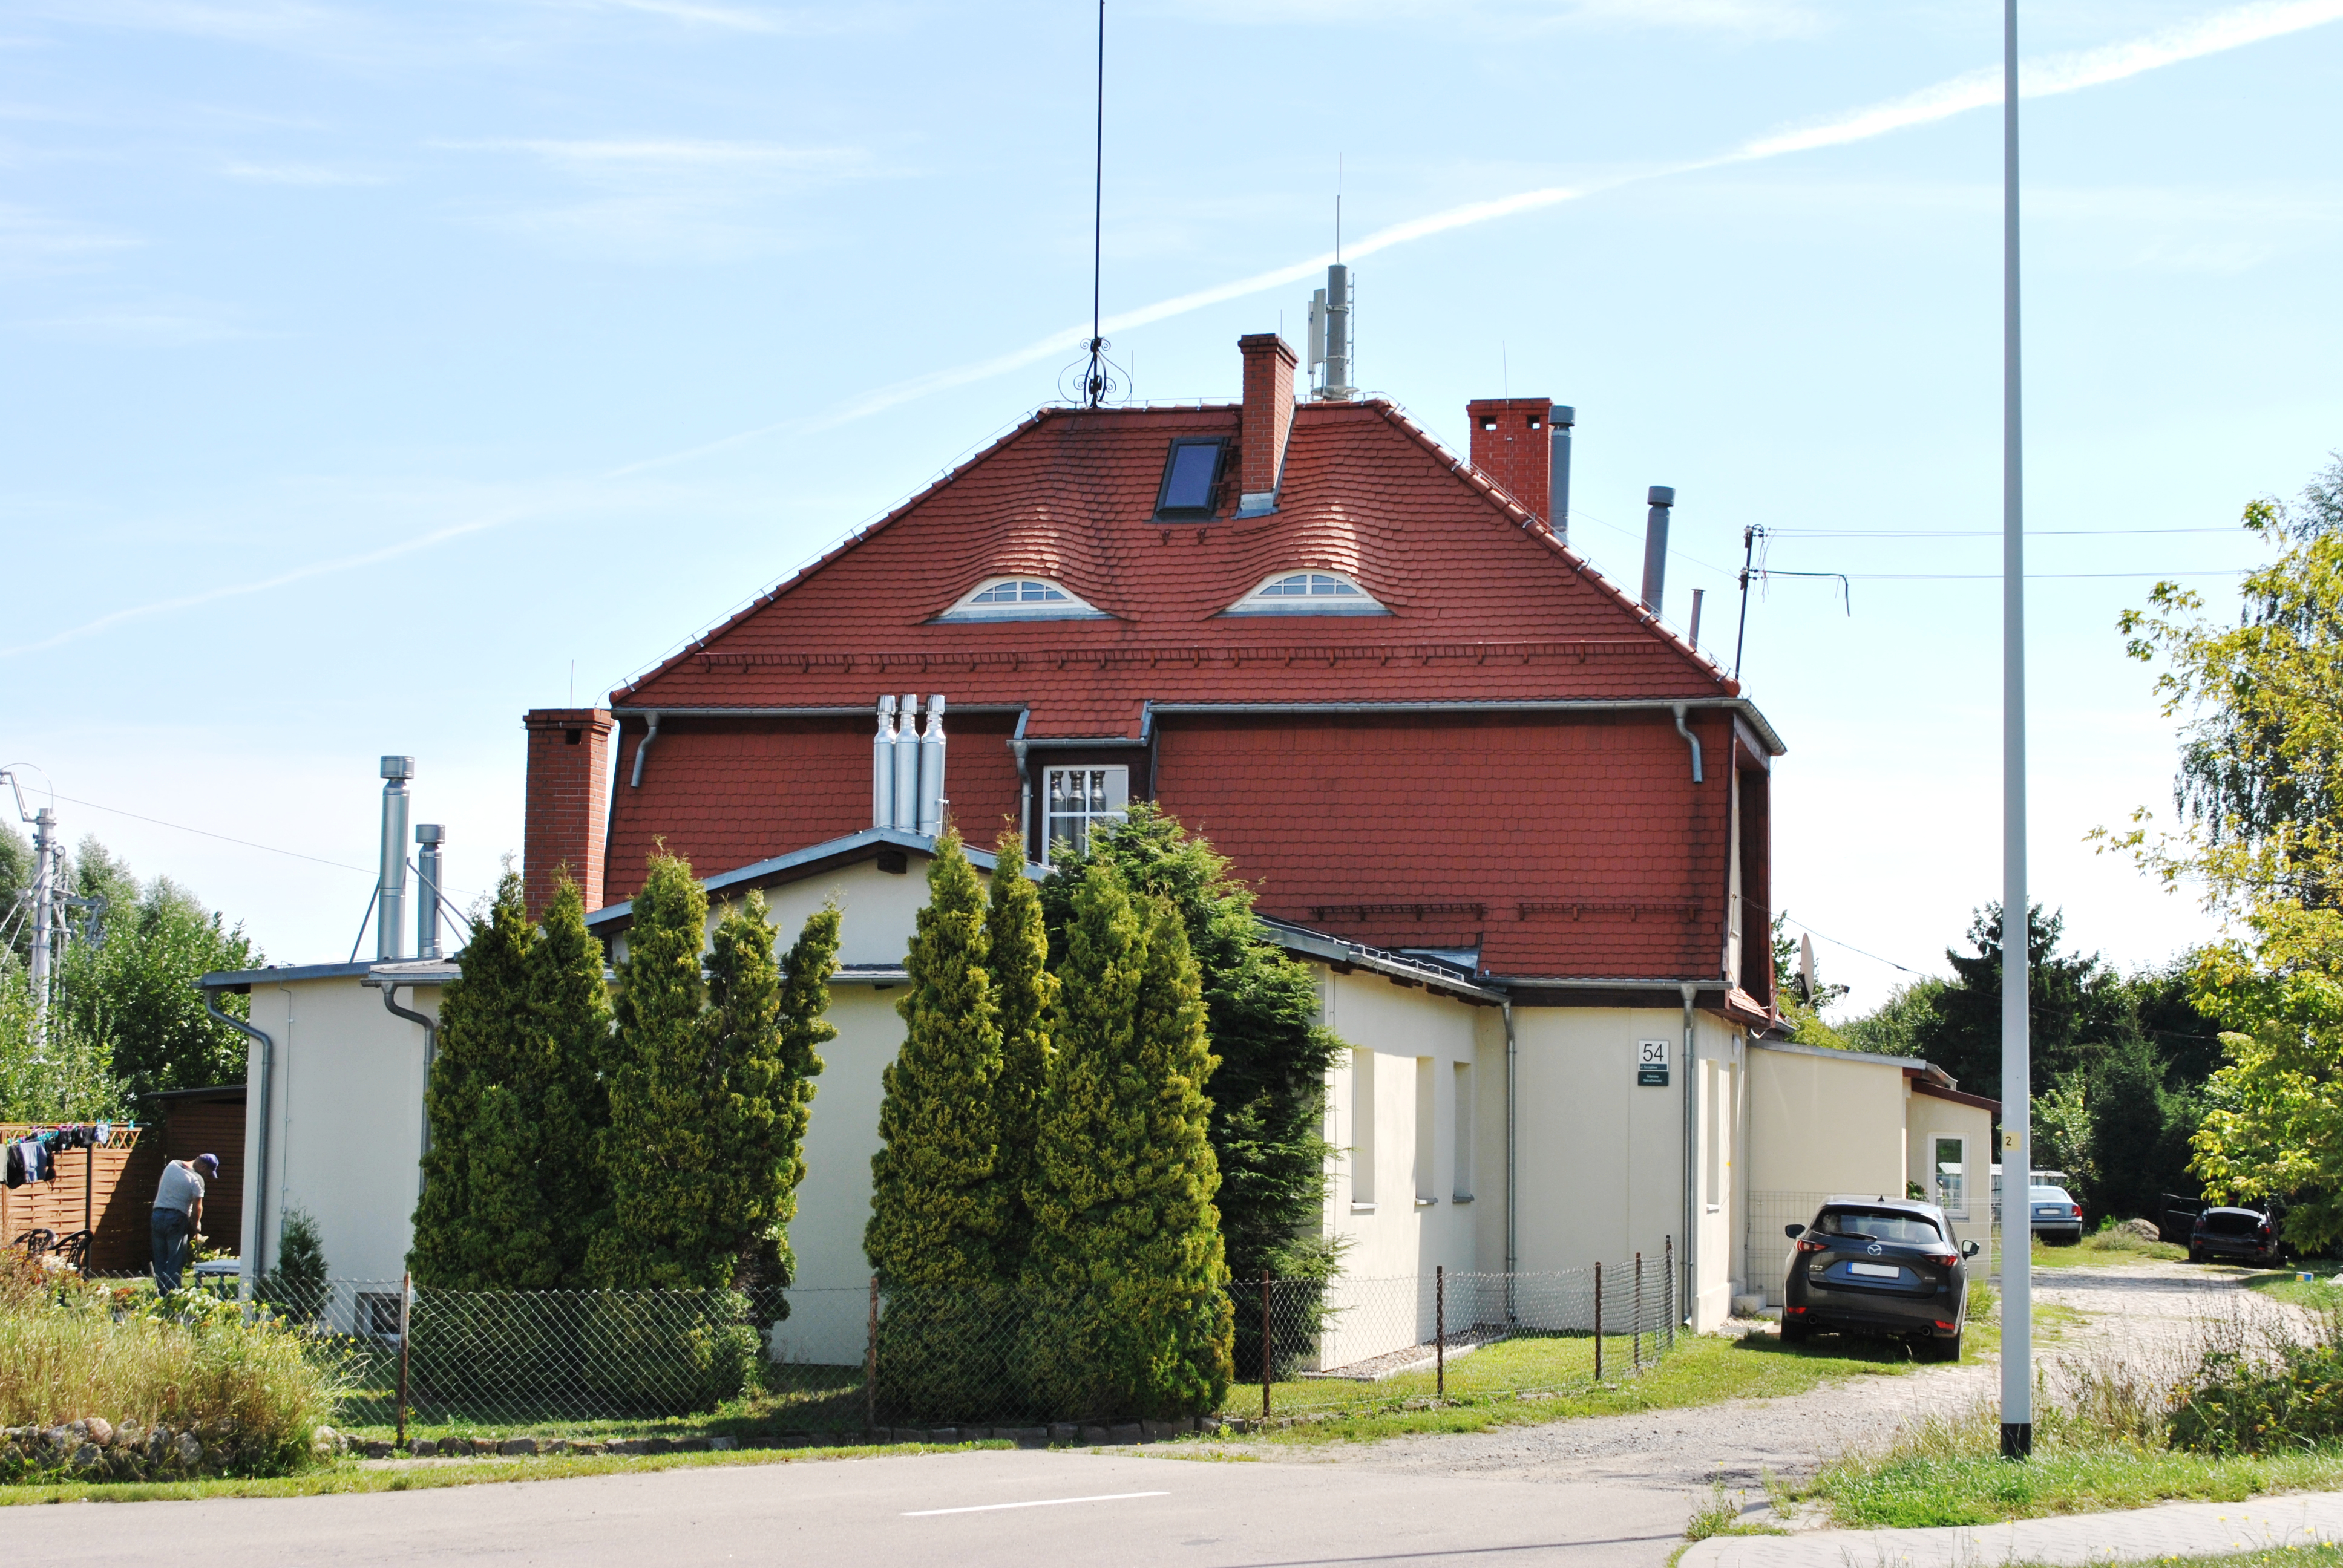 Widok wyremontowanego dachu mansardowego budynku głównego, krytego dachówką ceramiczną typu karpiówka.